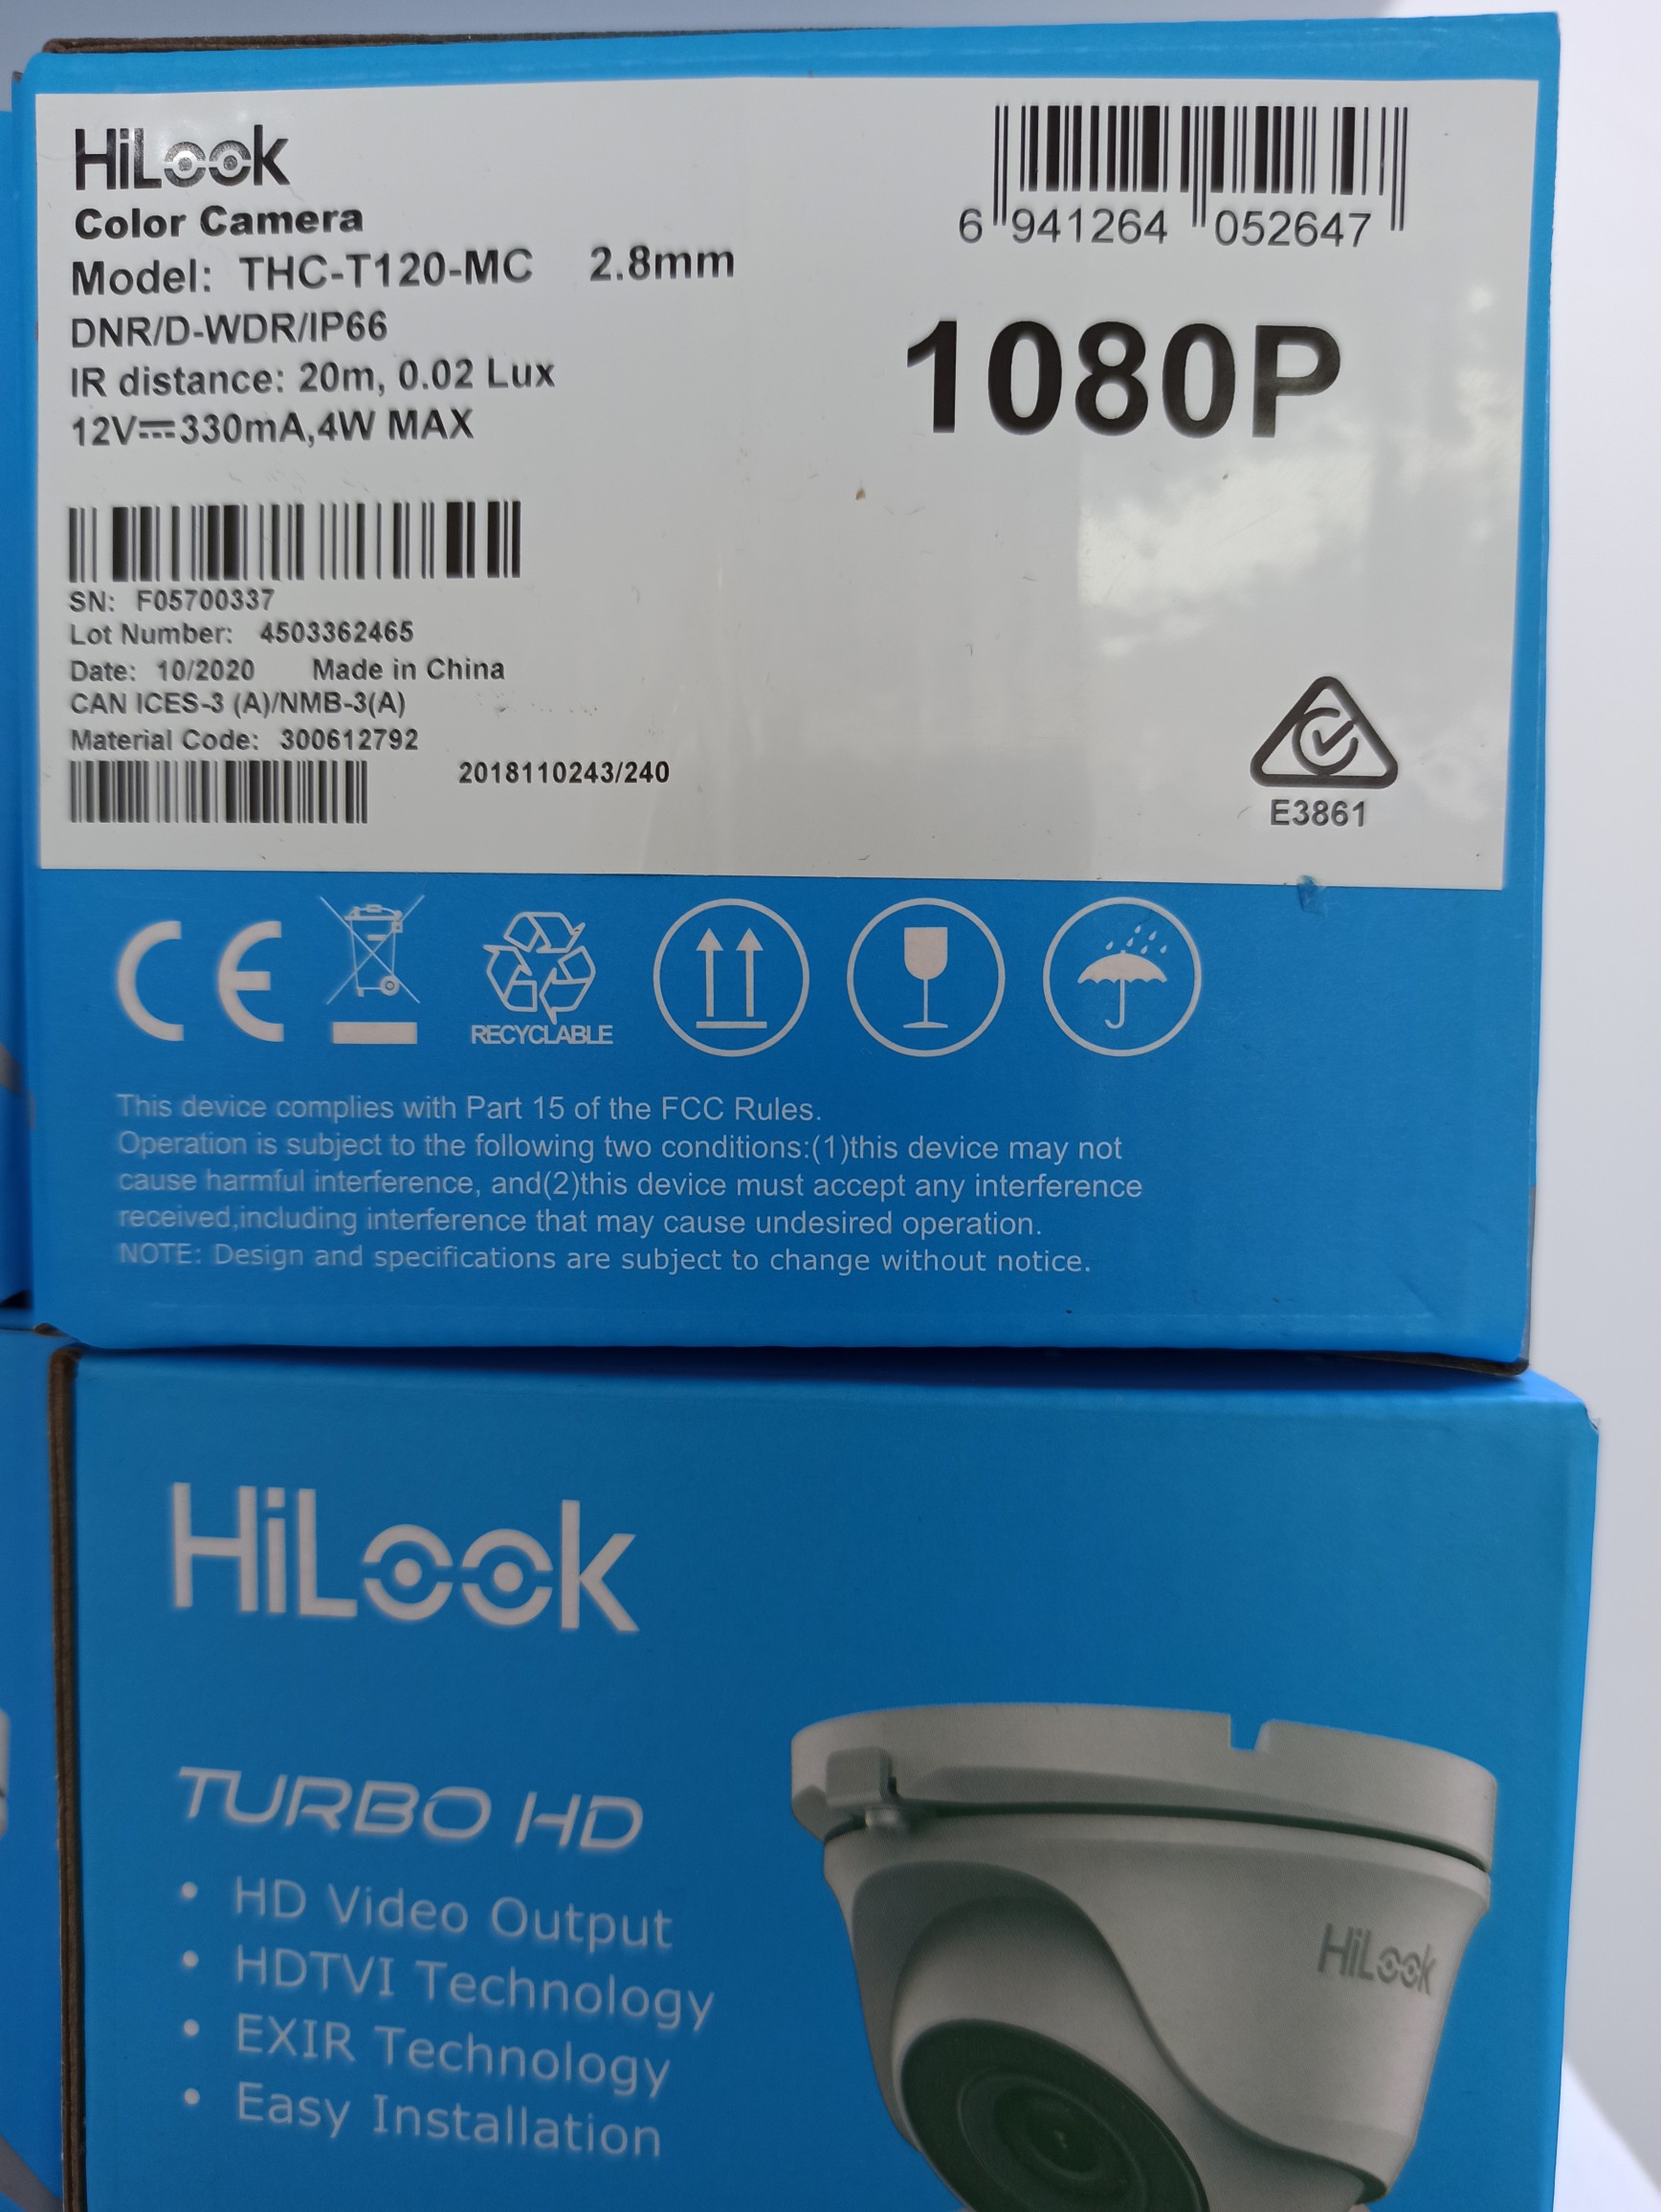 camaras y audio - Camaras de seguridad tipo domo metálica hilook 1080p 1